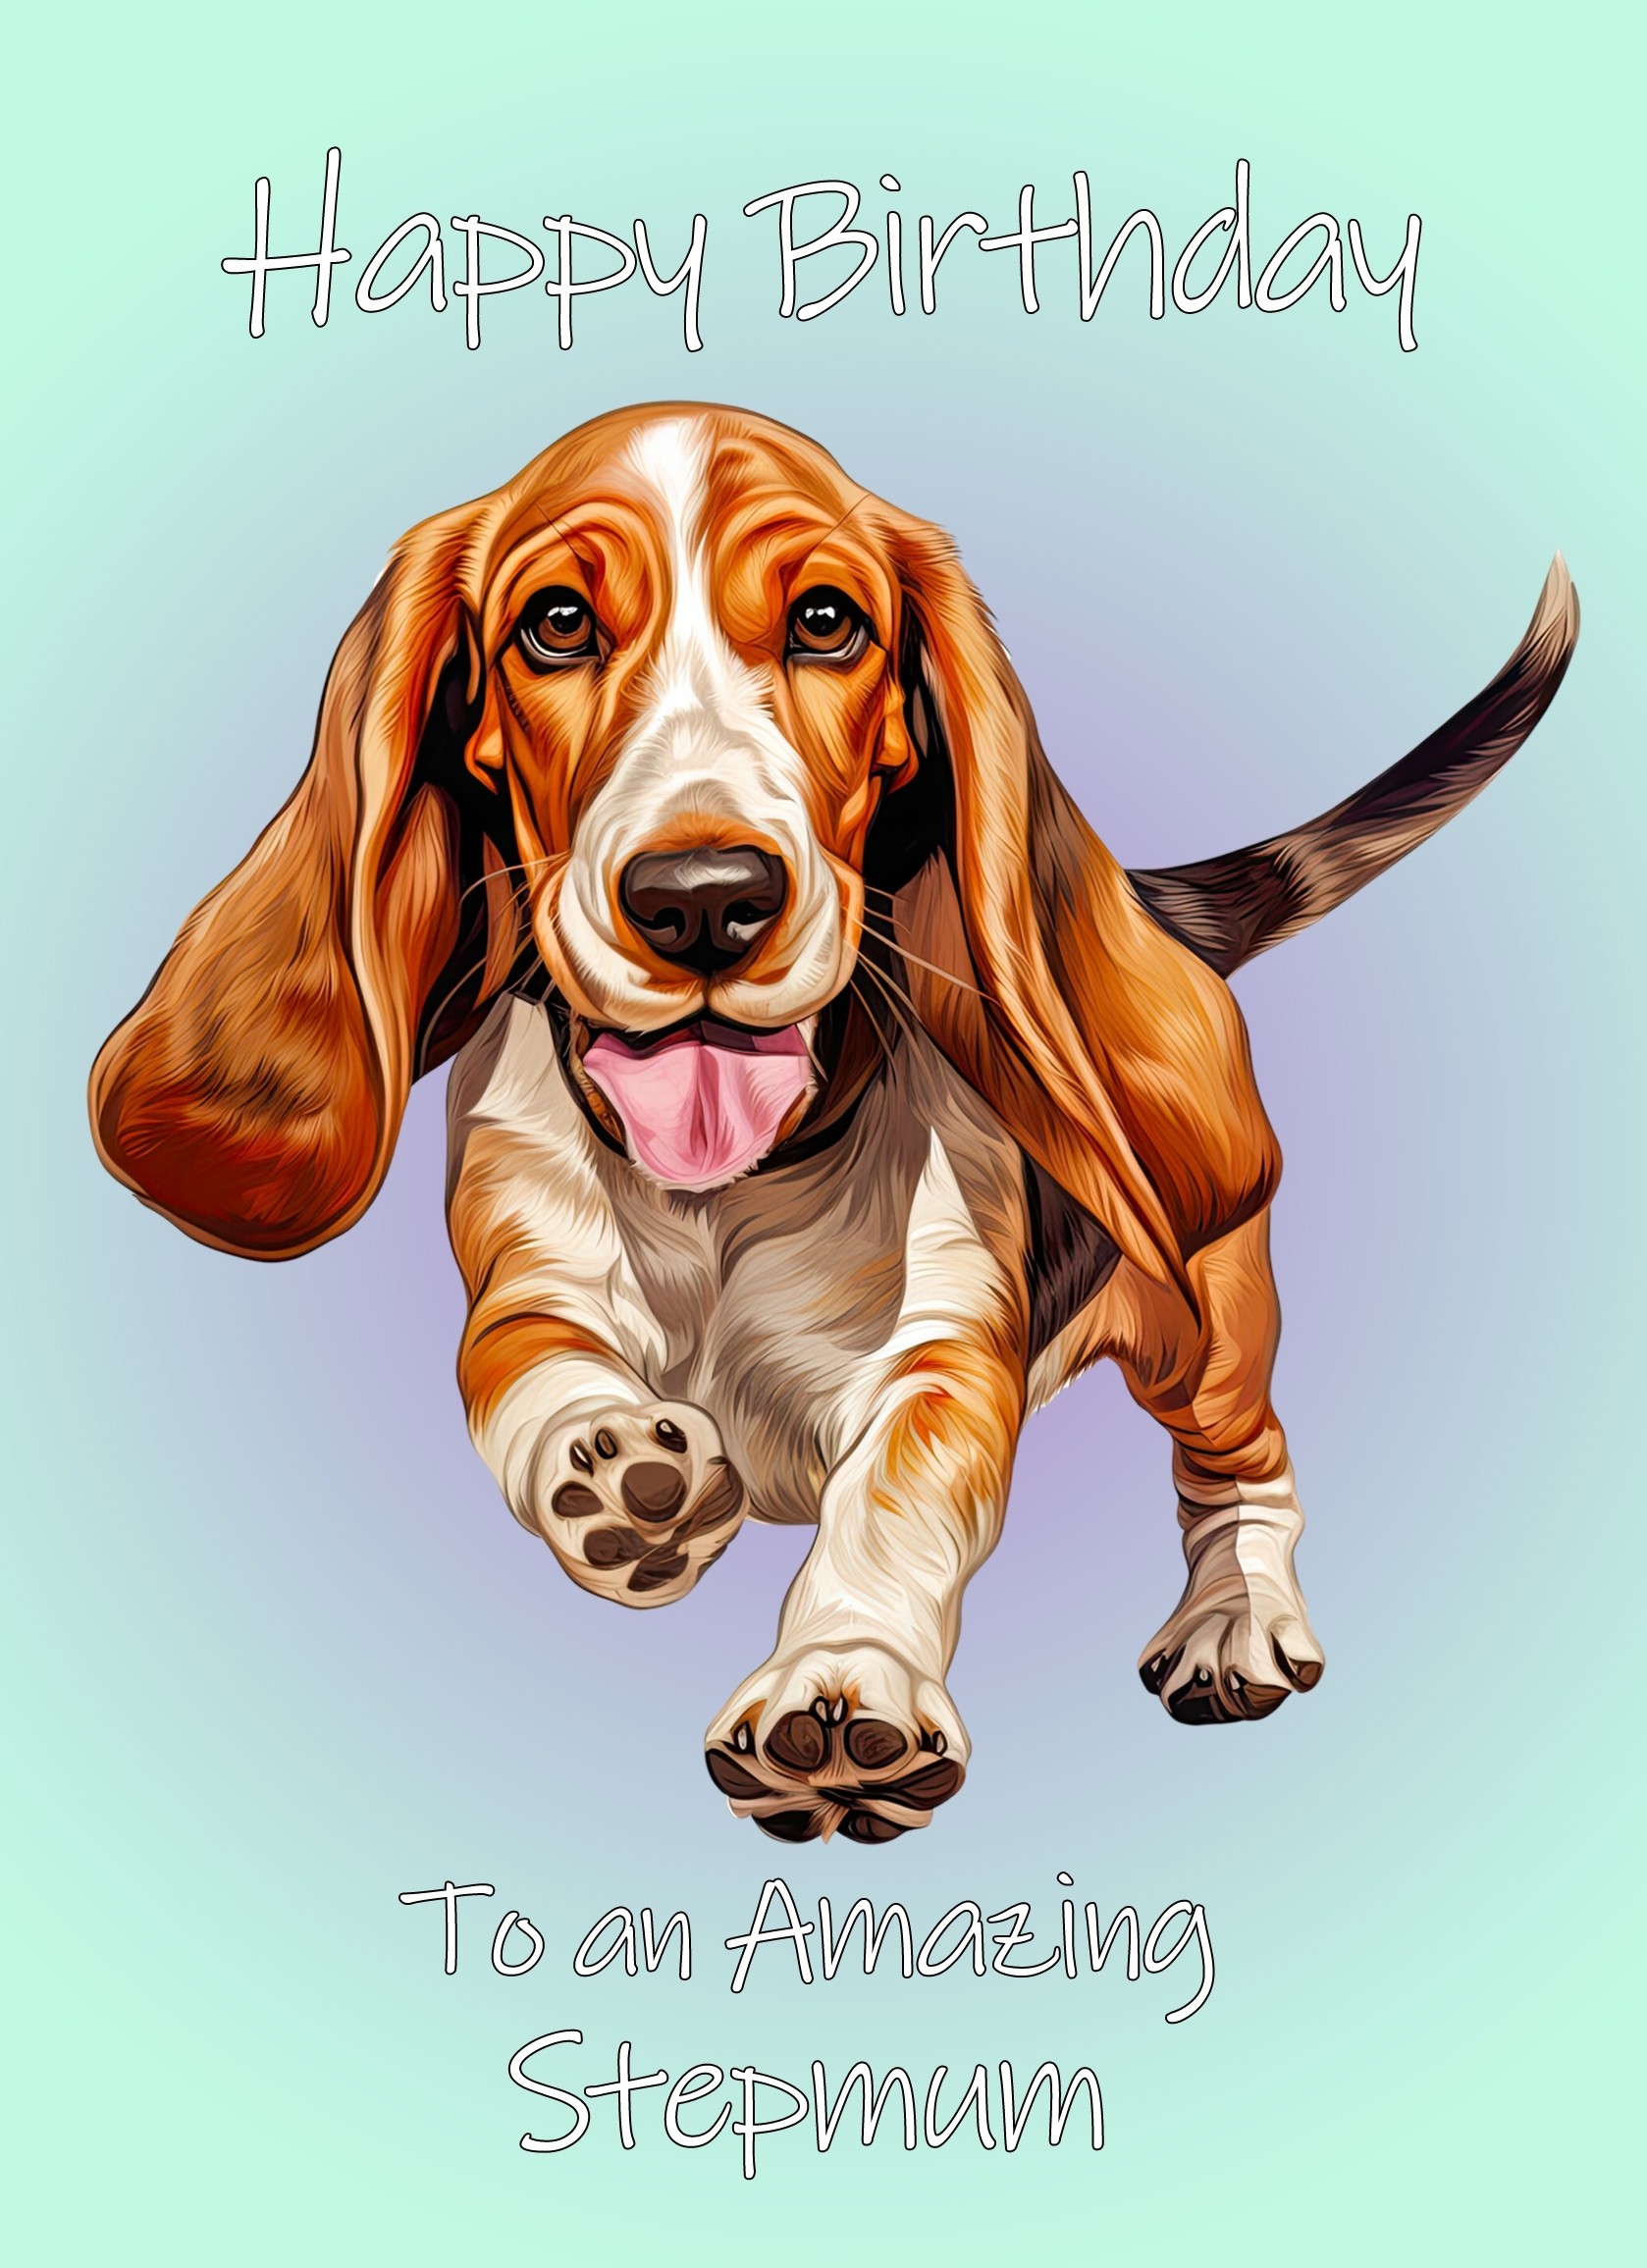 Basset Hound Dog Birthday Card For Stepmum